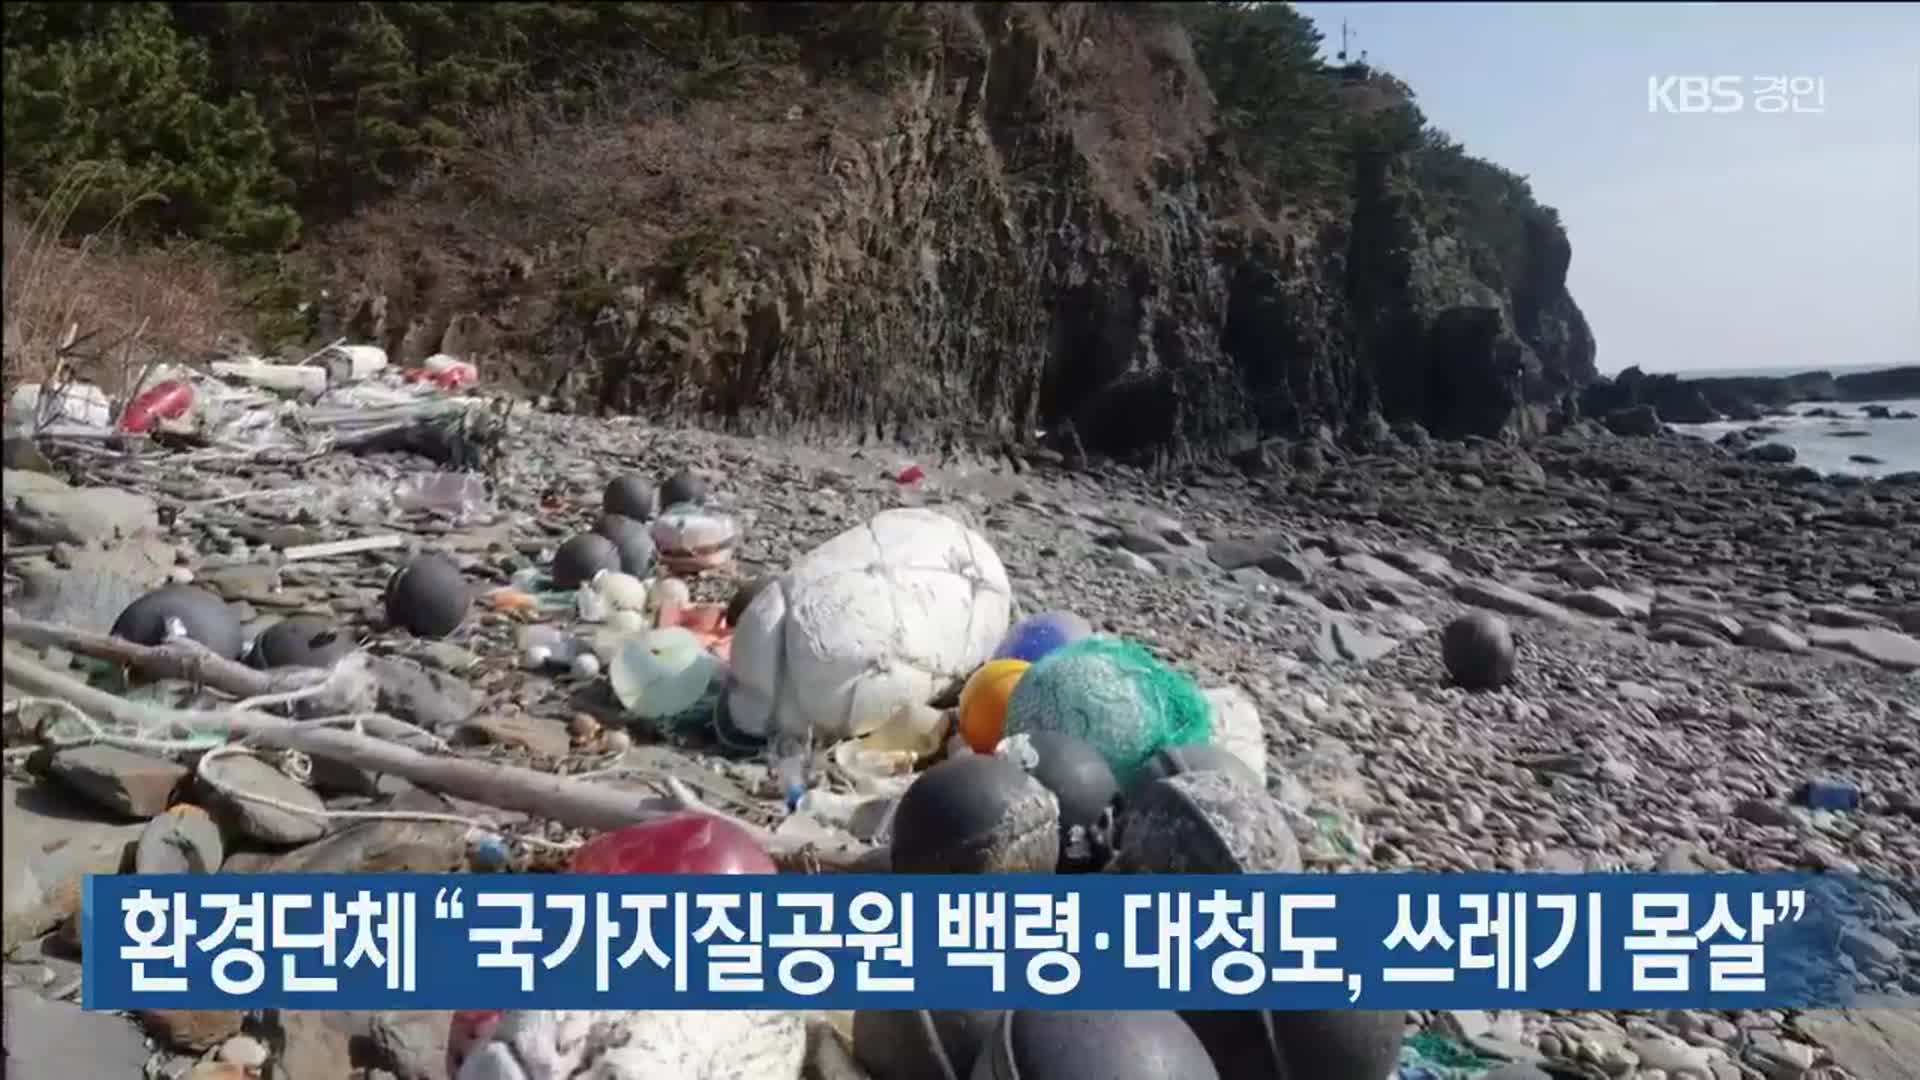 환경단체 “국가지질공원 백령·대청도, 쓰레기 몸살”